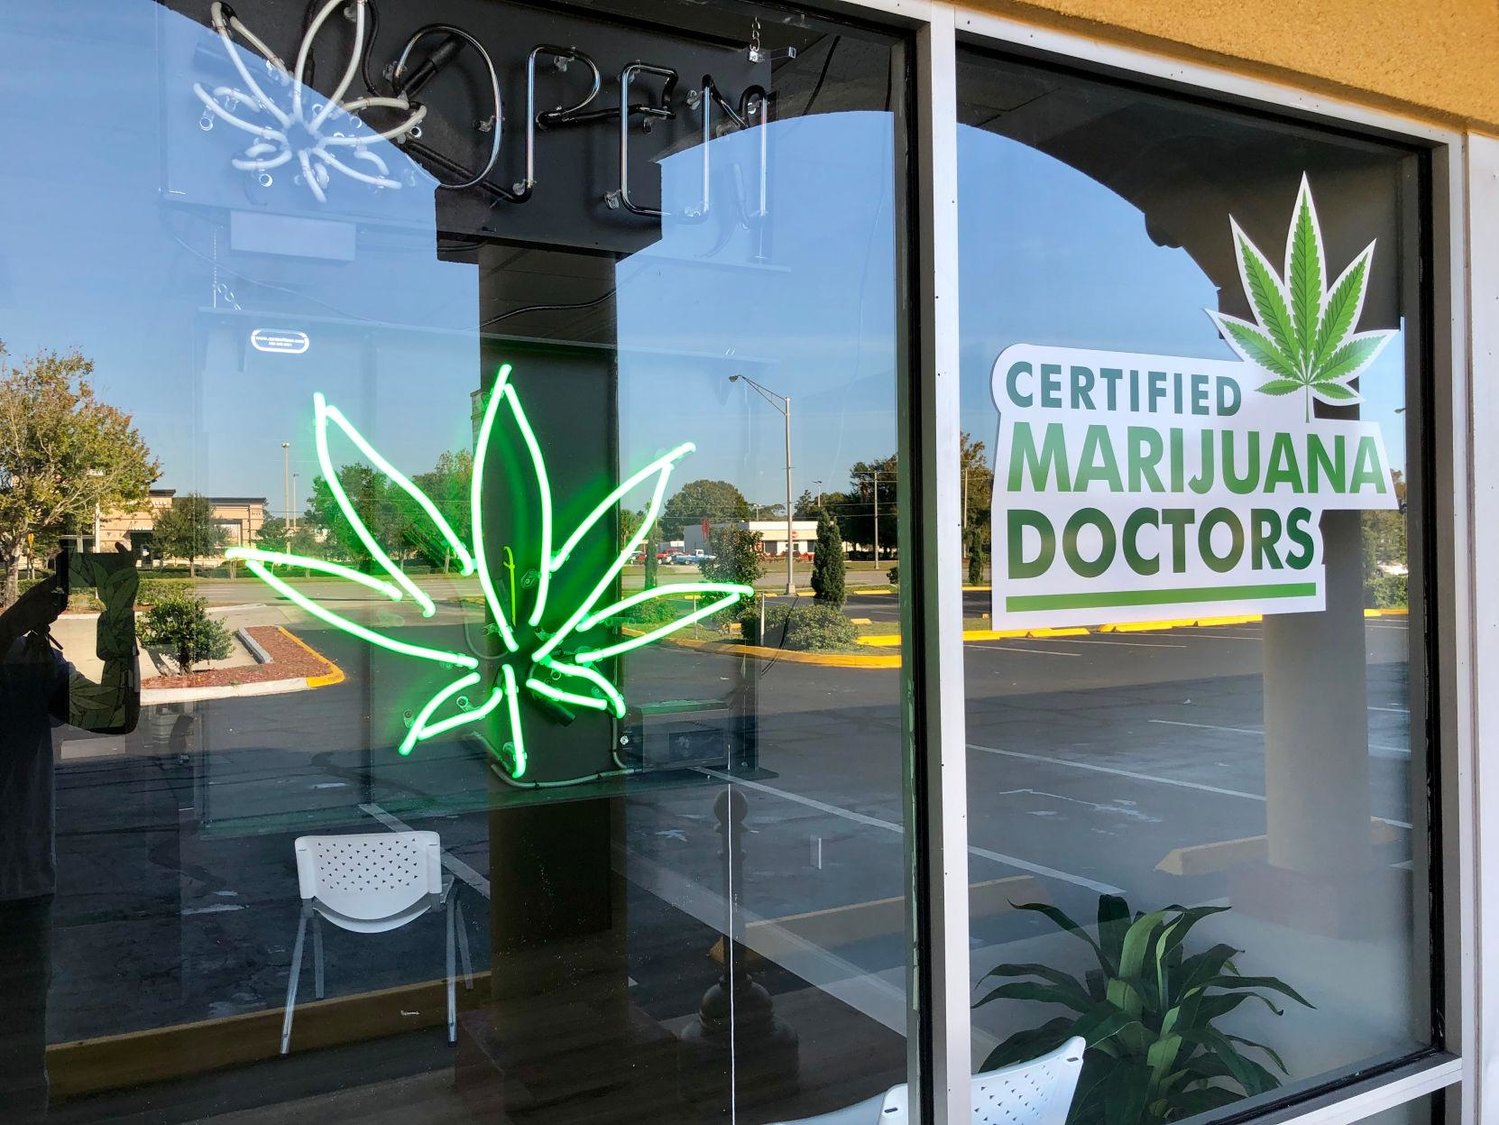 Certified Marijuana Doctors storefront in Daytona, Fla.
Robert Gregory Griffeth / Shutterstock.com